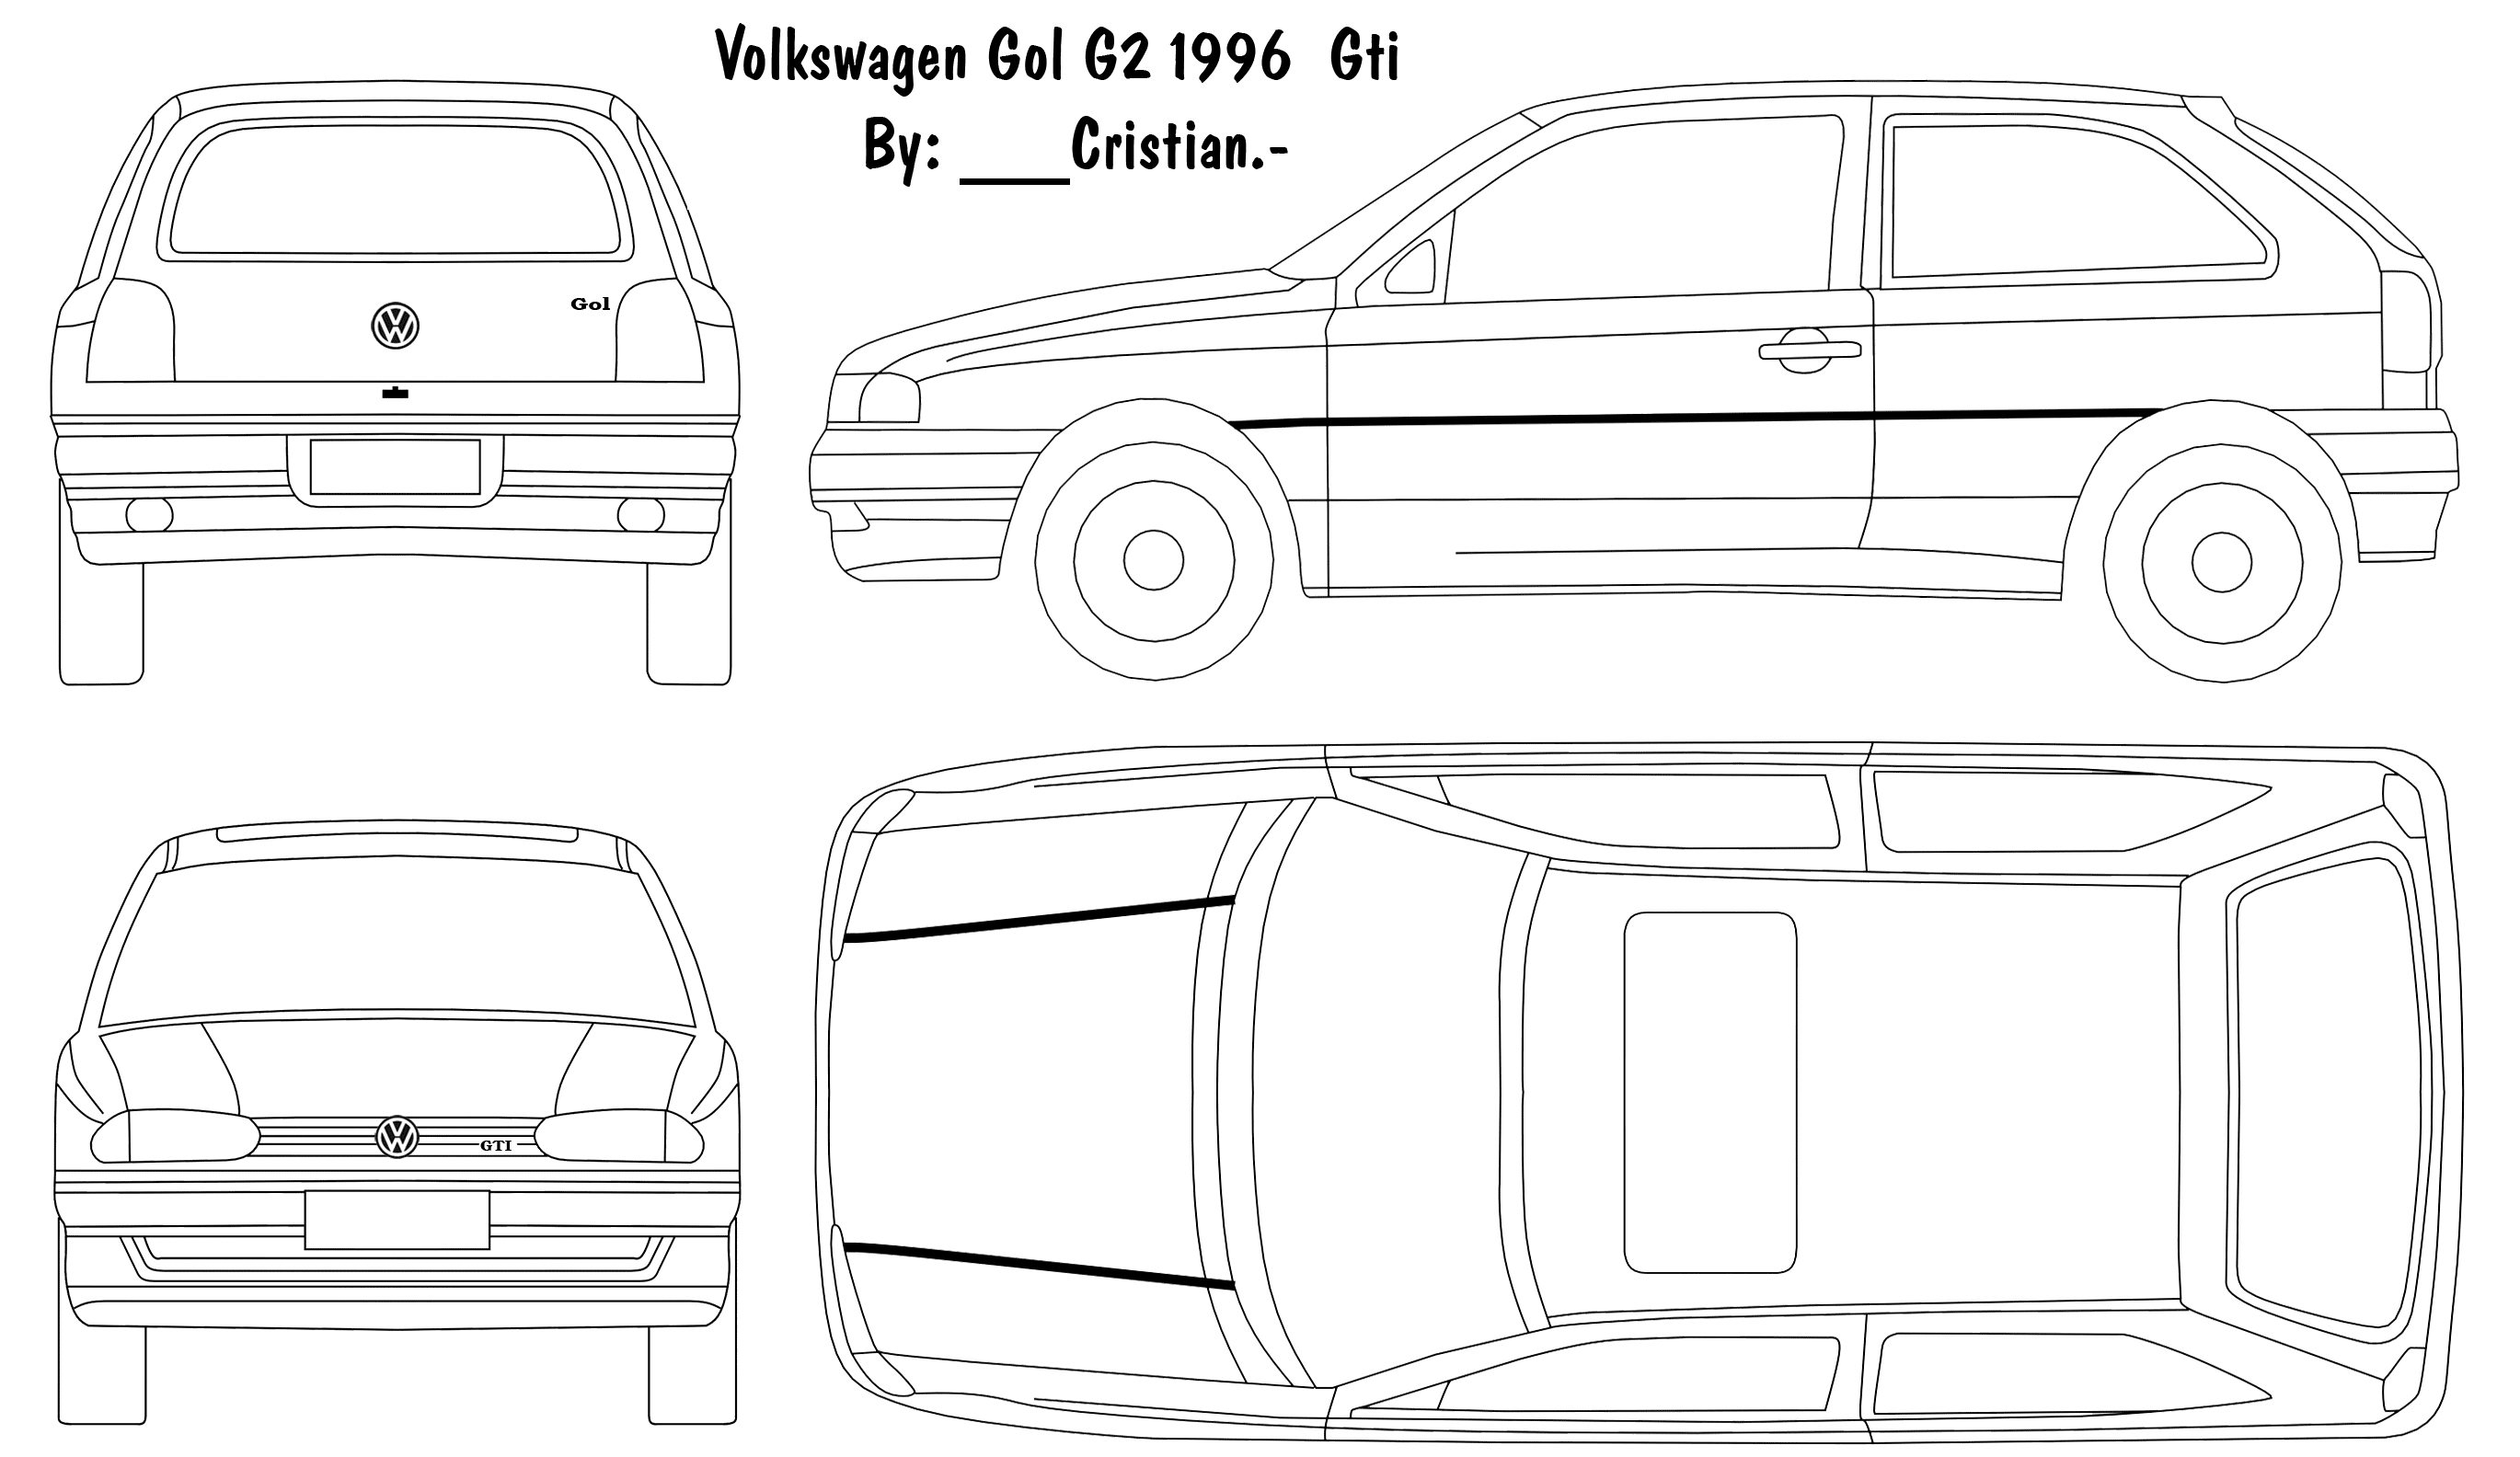 1996 Volkswagen Volkswagen Gol G2 GTI 2-door Hatchback blueprints free